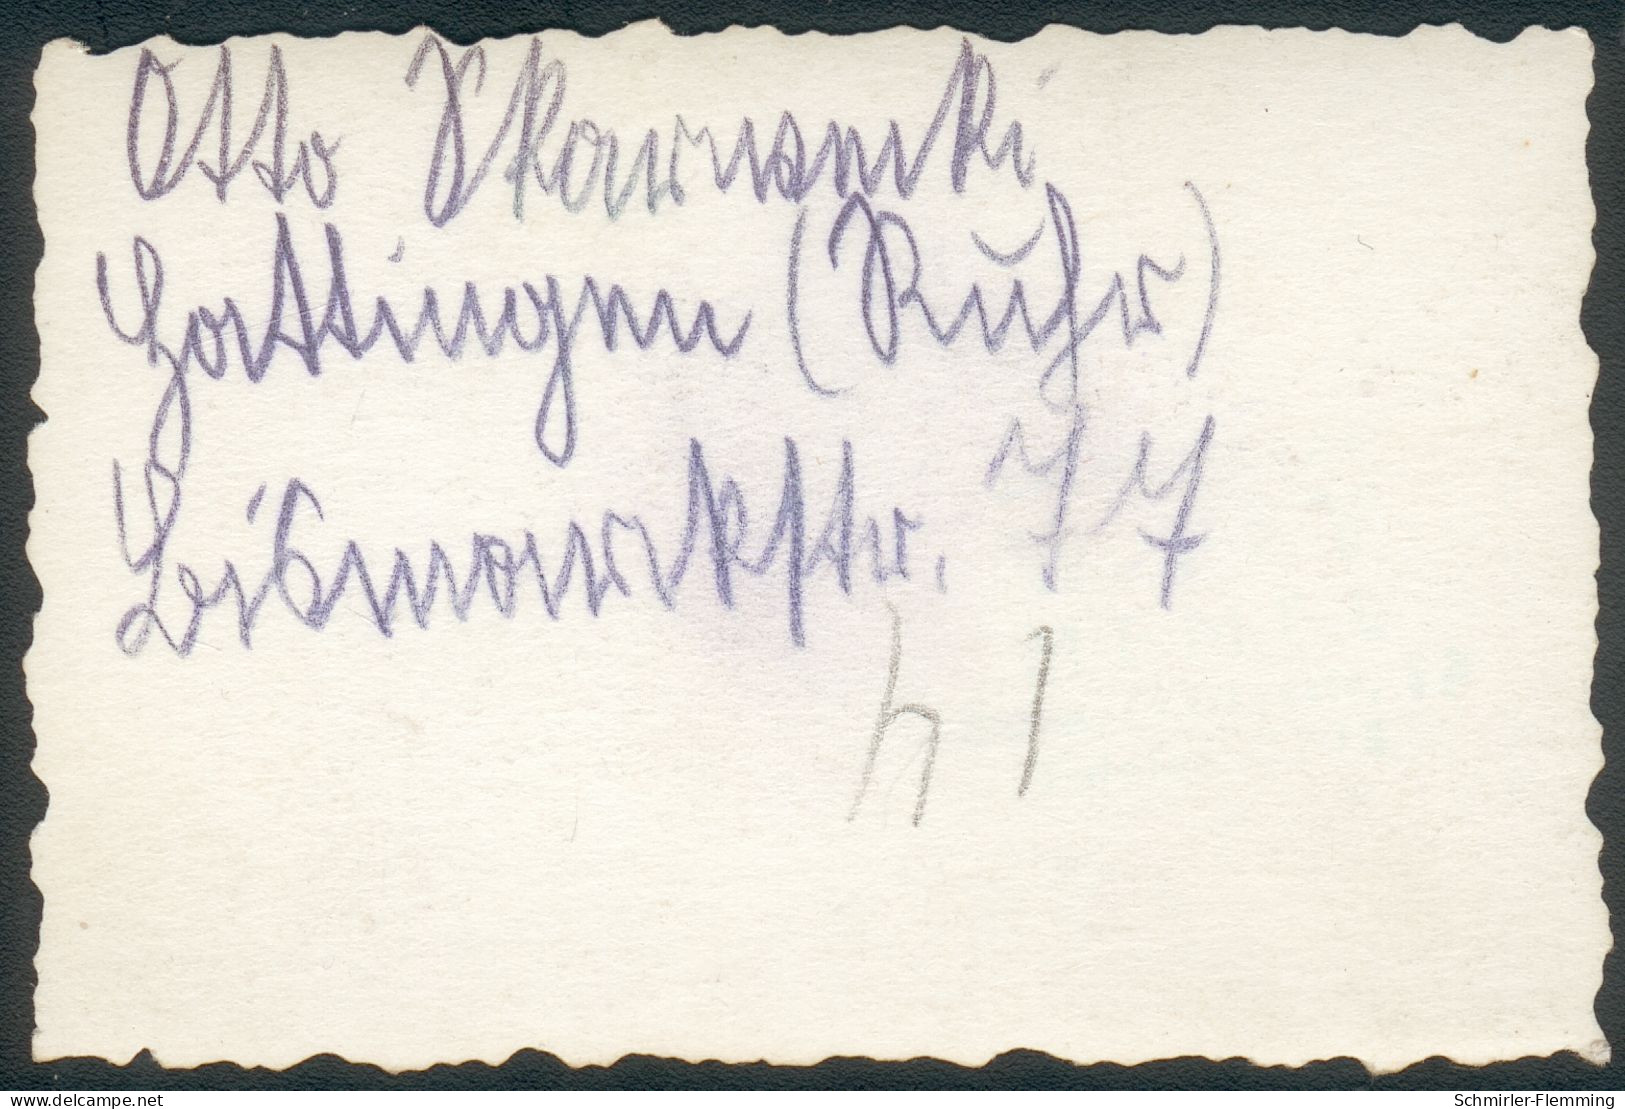 Deutsches Reich Mitglieds-Karte Reichsarbeitsdienst (RAD) 1.Okt. 1935 mit 2 Foto's dazu !!! RARITÄT !!!